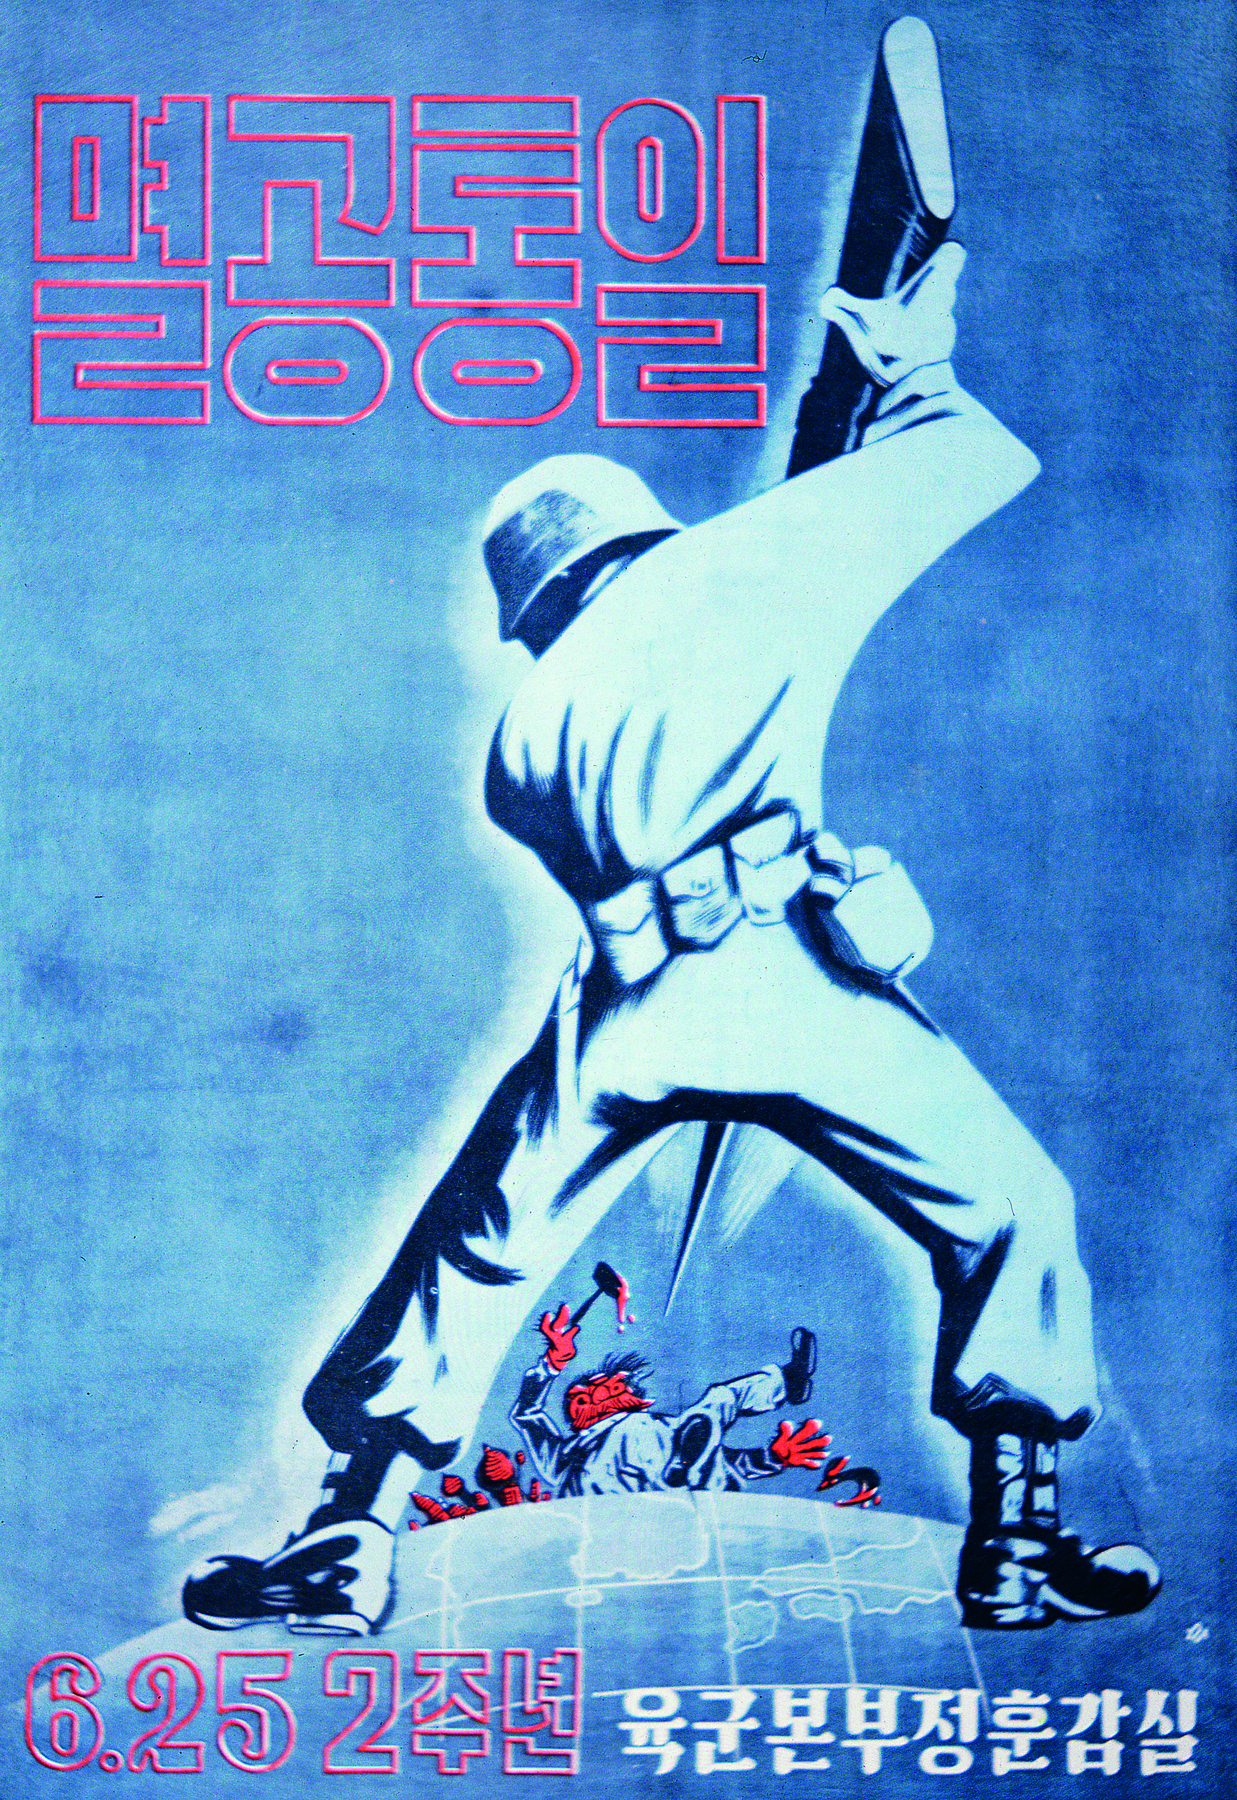 Cartaz. Ilustração de soldado em pé sobre o globo terrestre. Ele está de costas, com as pernas afastadas. Com uma arma ele fere pessoas. Em cima e embaixo do cartaz, escritos em coreano.